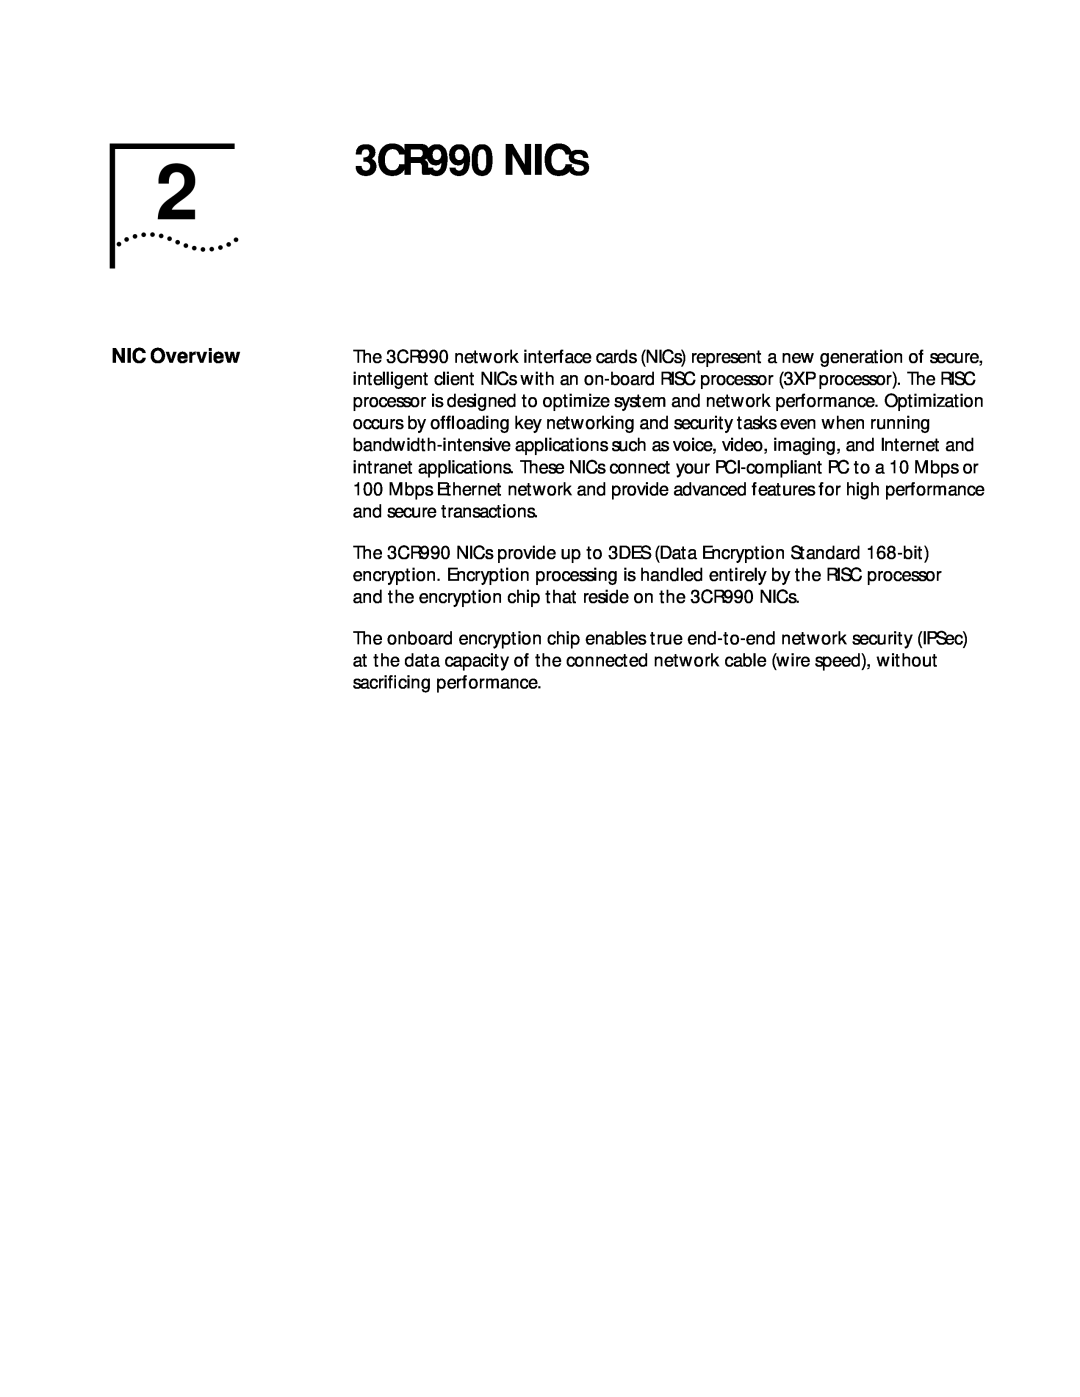 3Com manual 3CR990 NICS, NIC Overview 